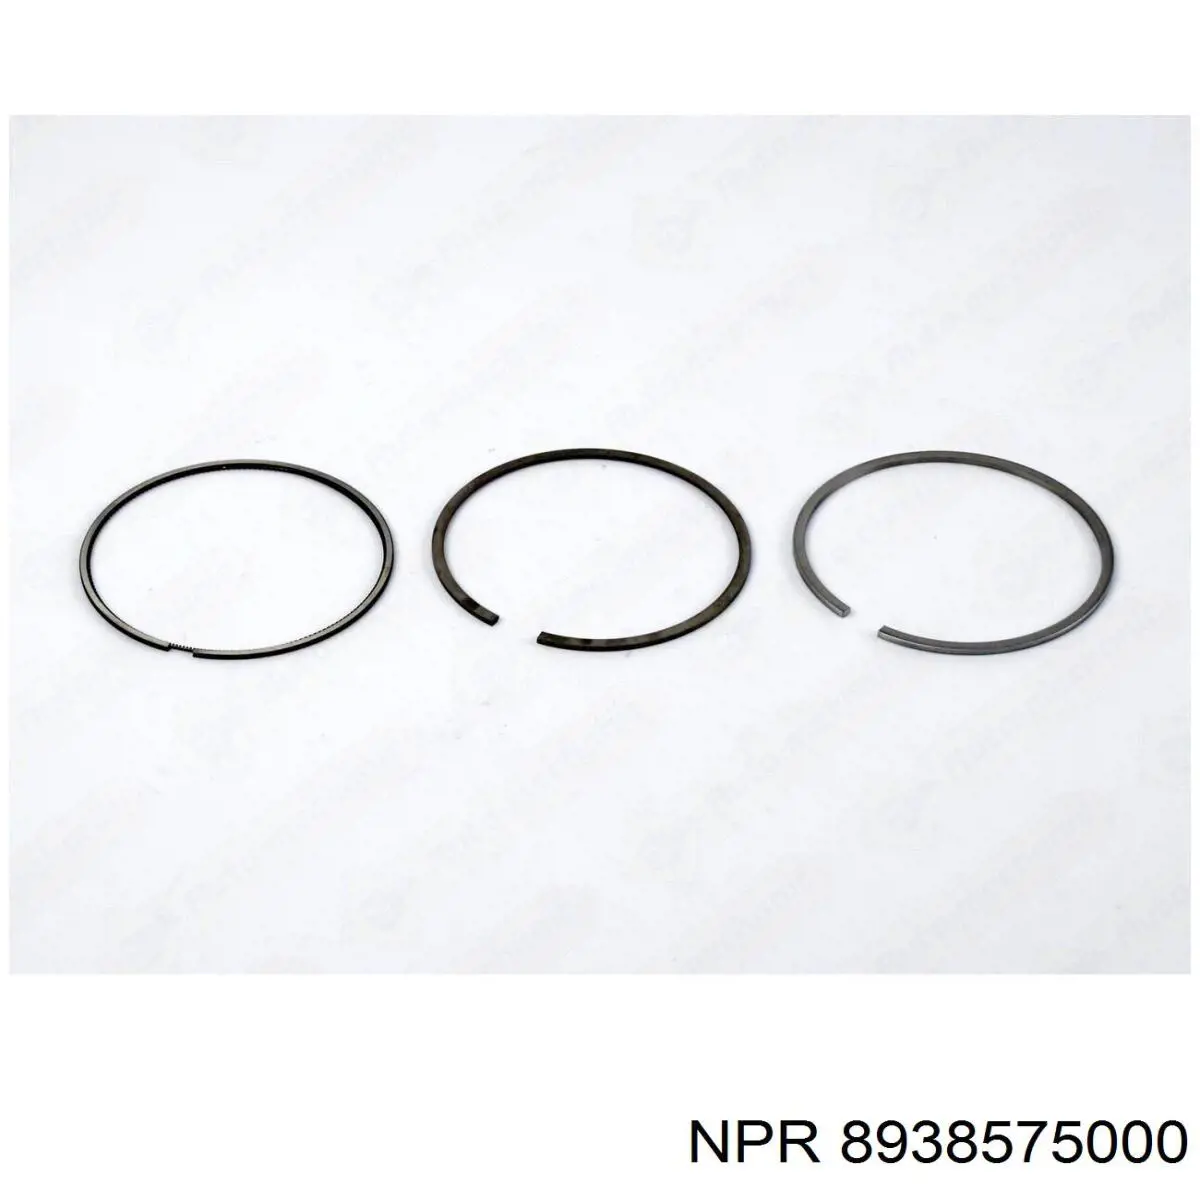 120038005721 NE/NPR кільця поршневі на 1 циліндр, 2-й ремонт (+0,50)